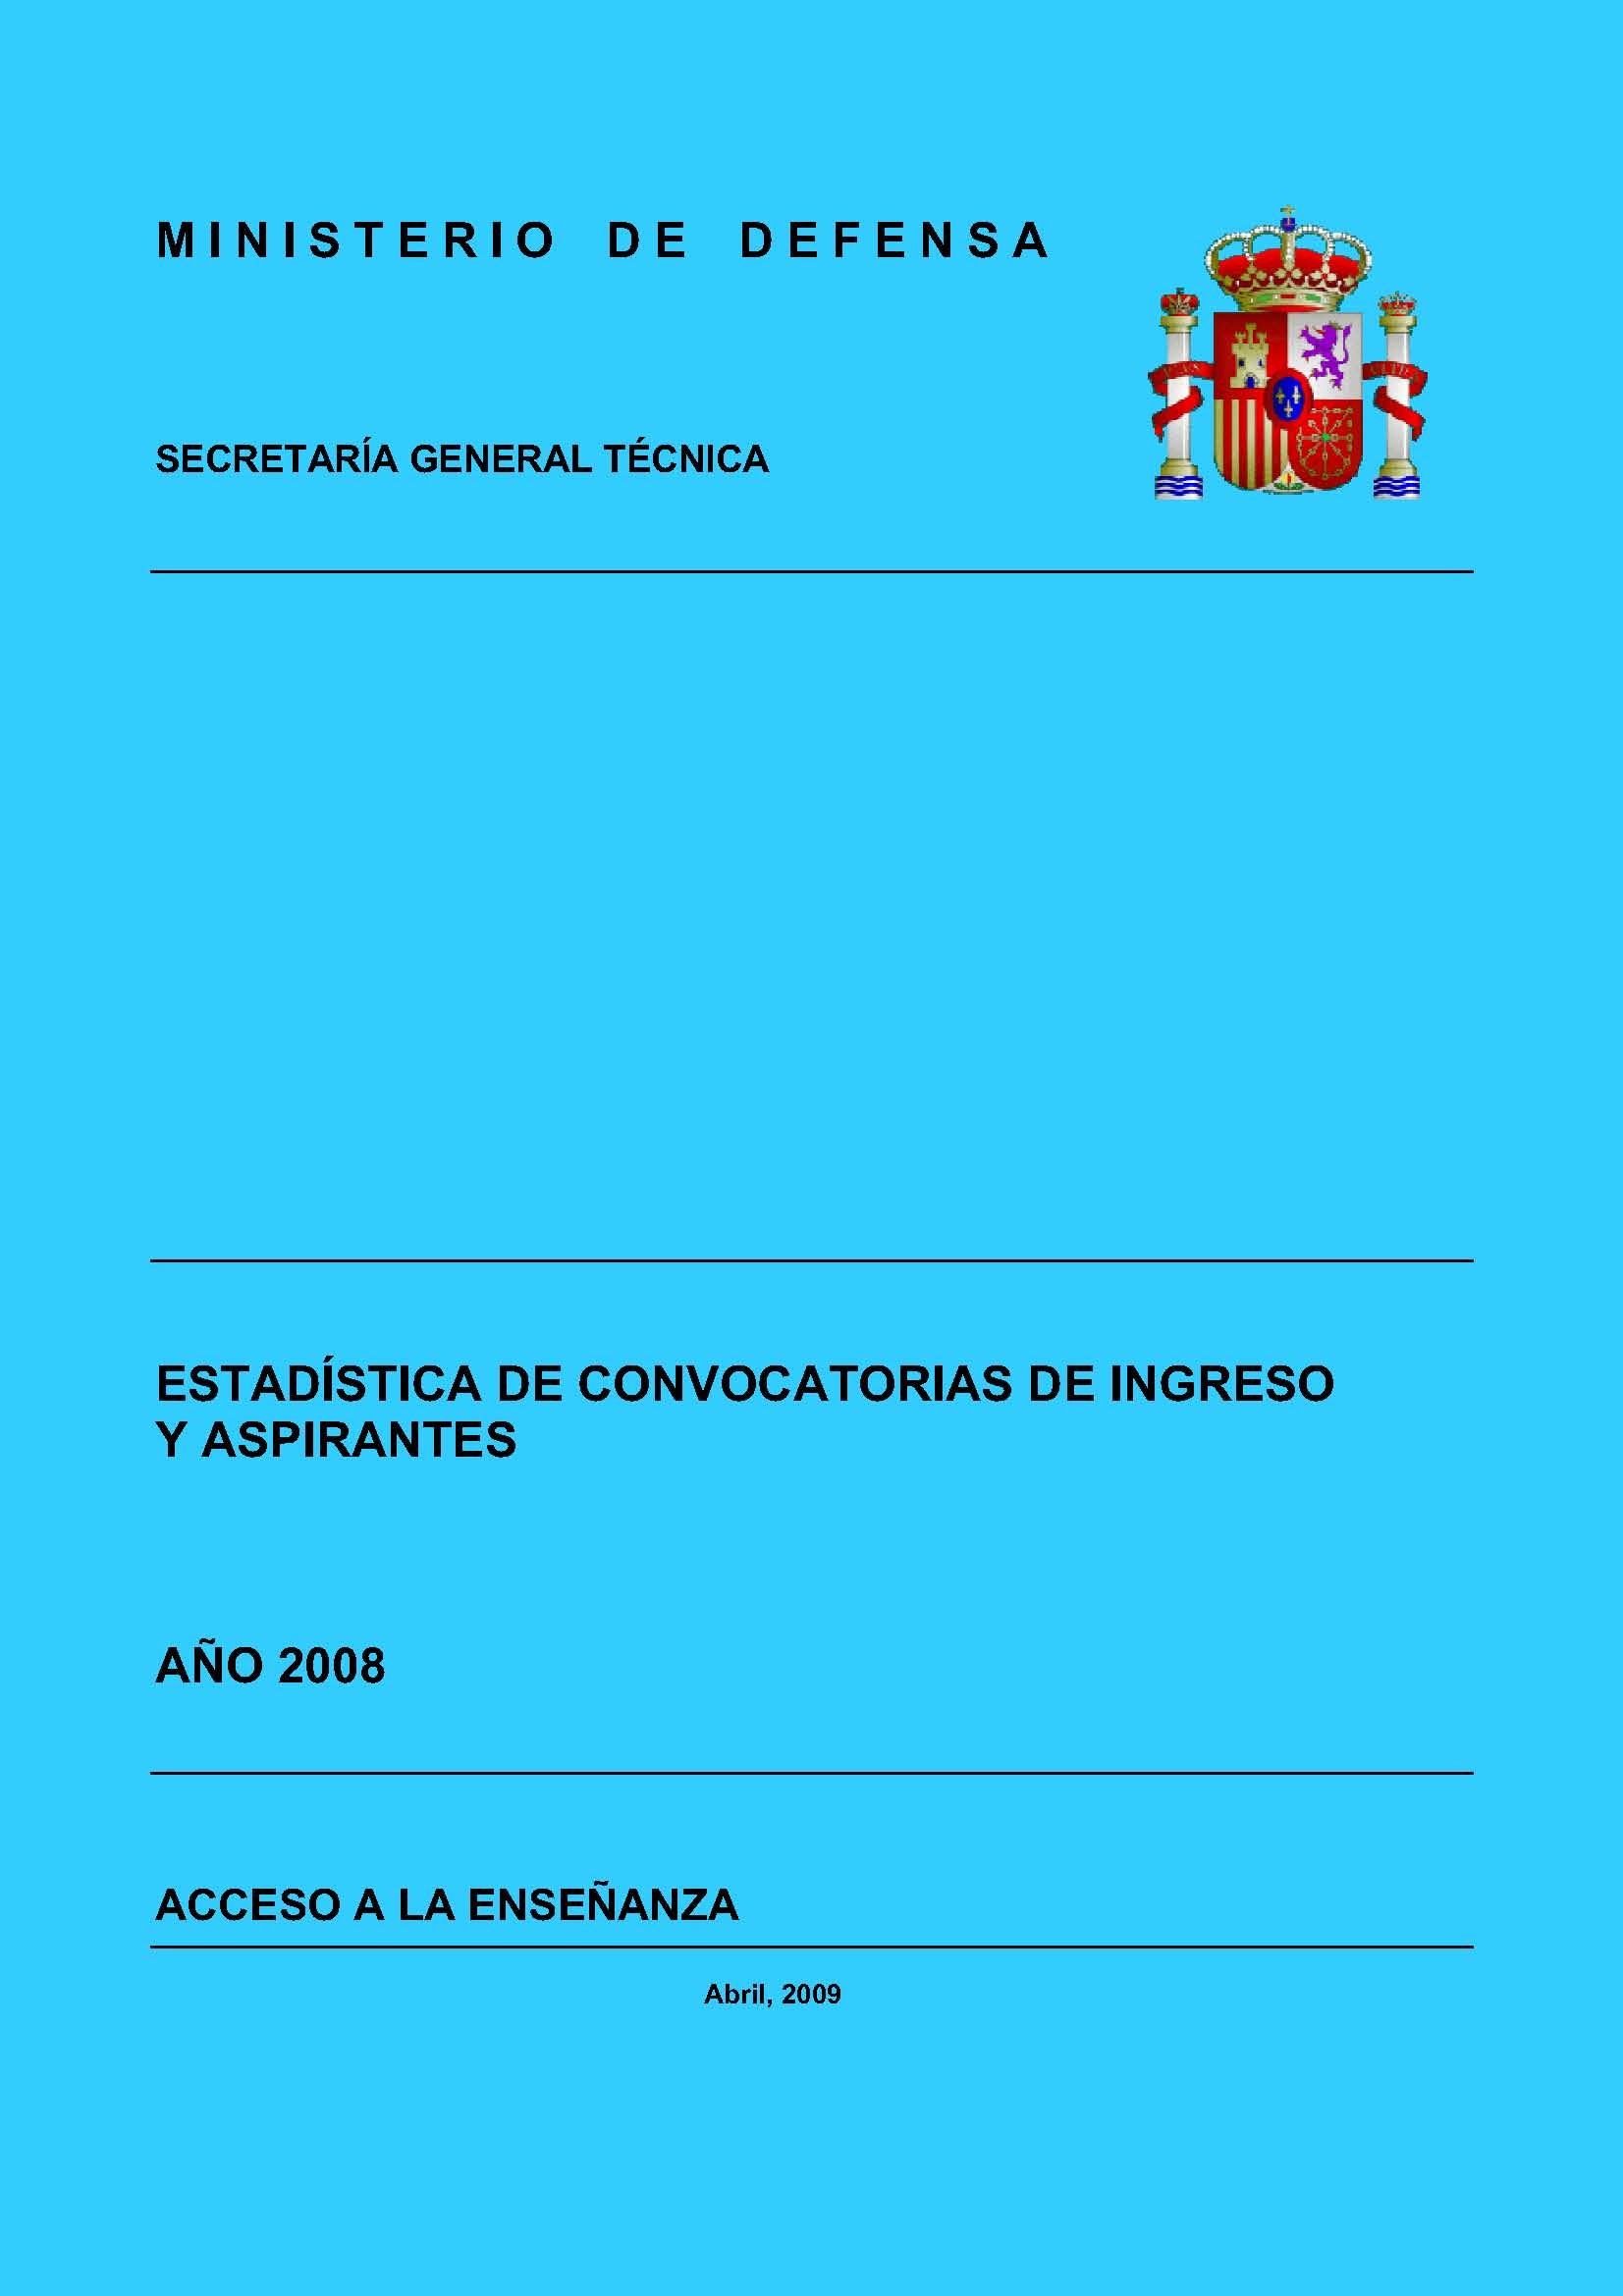 ESTADÍSTICA DE CONVOCATORIAS DE INGRESO Y ASPIRANTES 2008